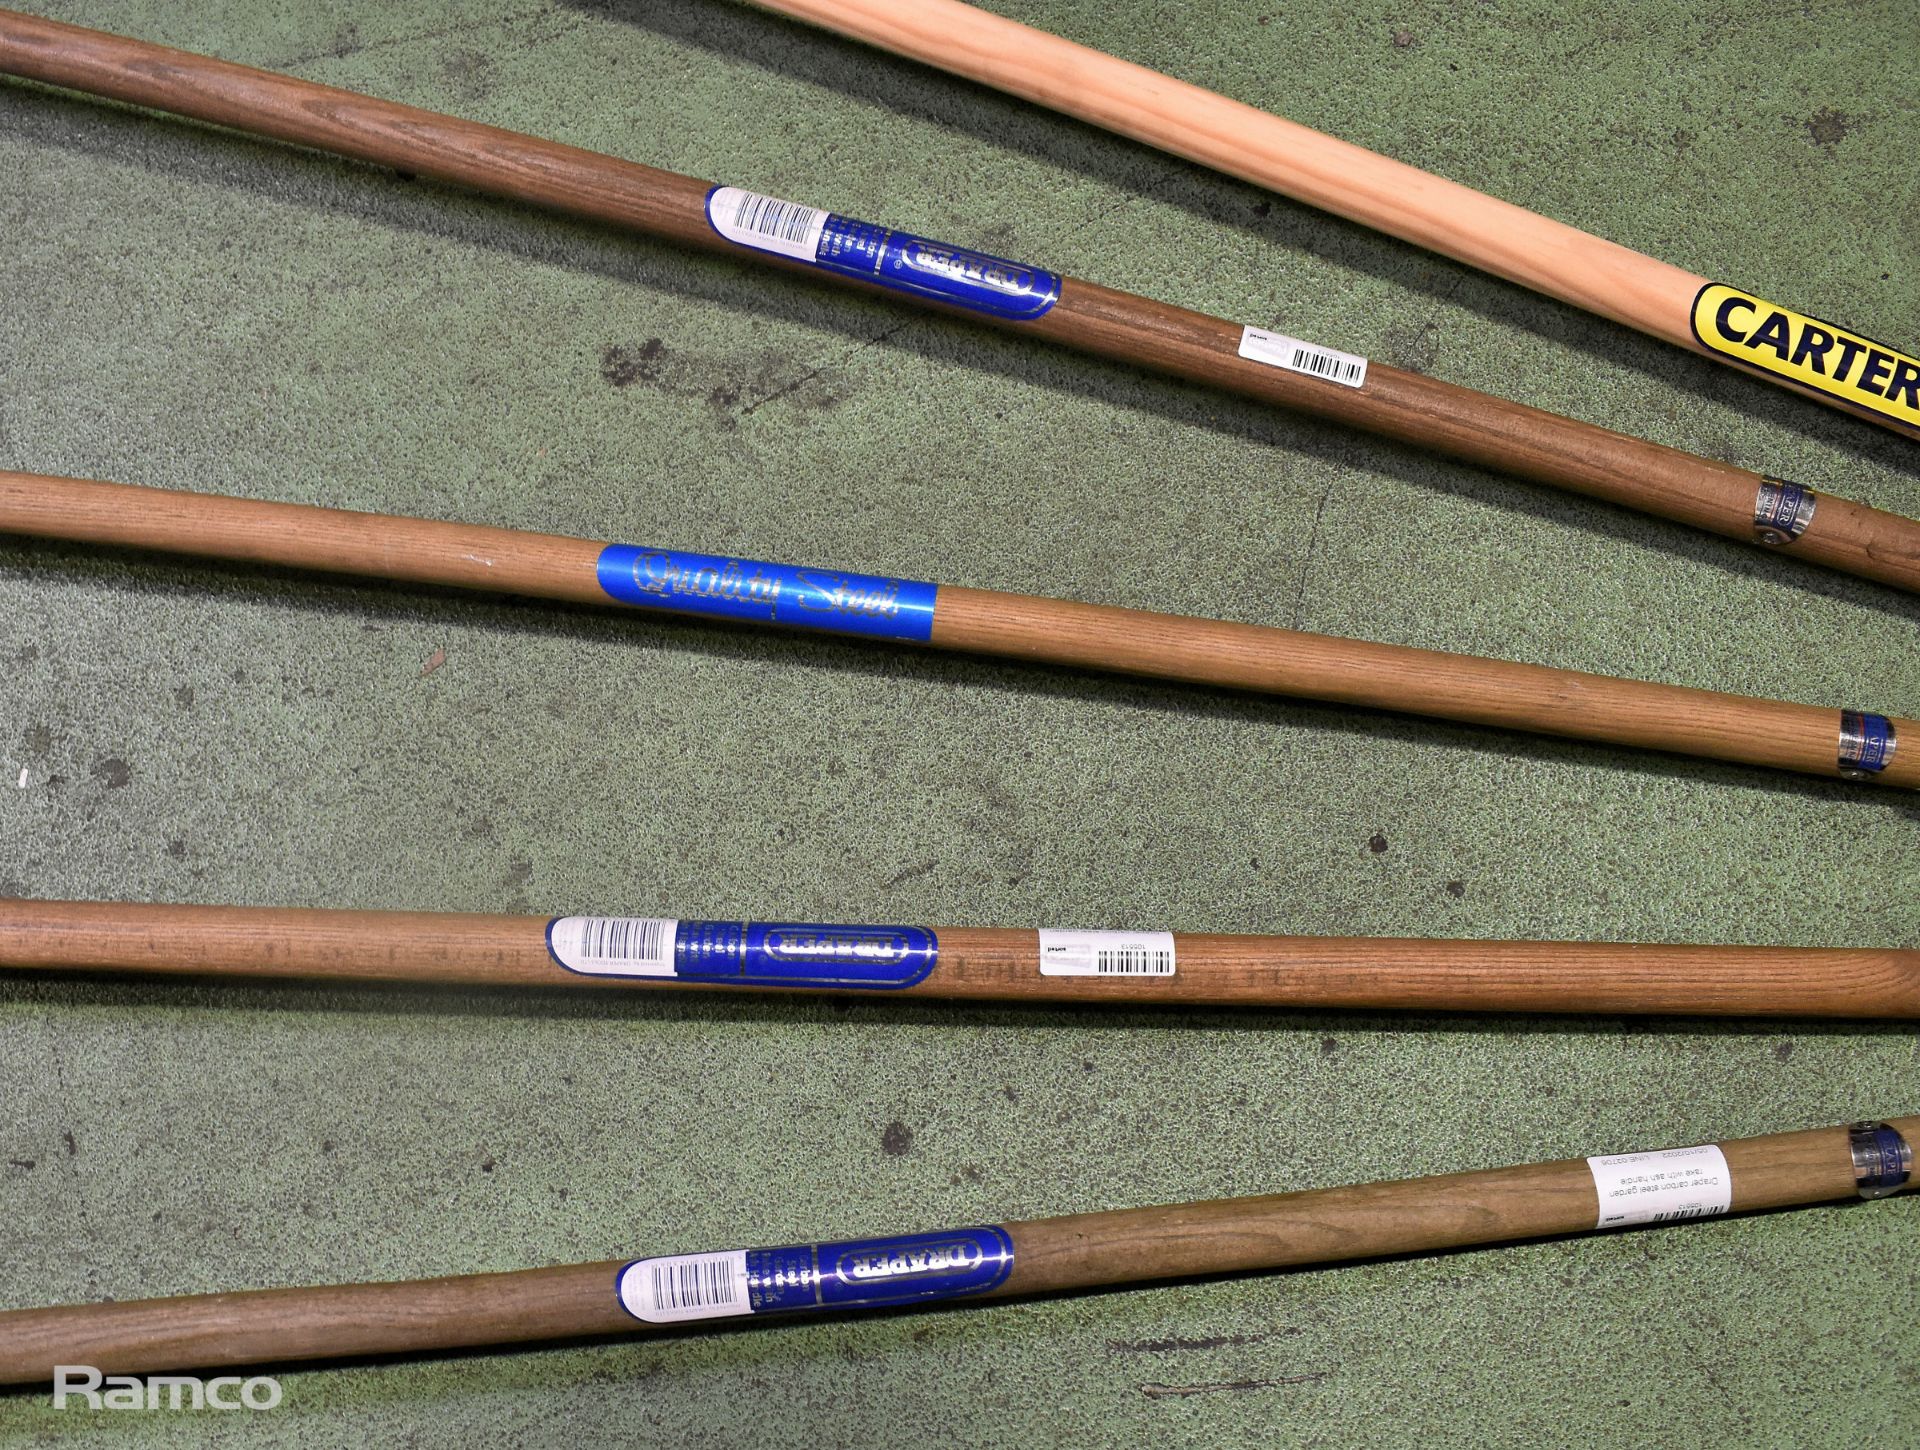 Carter's wooden handle garden rake, 3x Draper carbon steel garden rakes with ash handle - Image 3 of 3